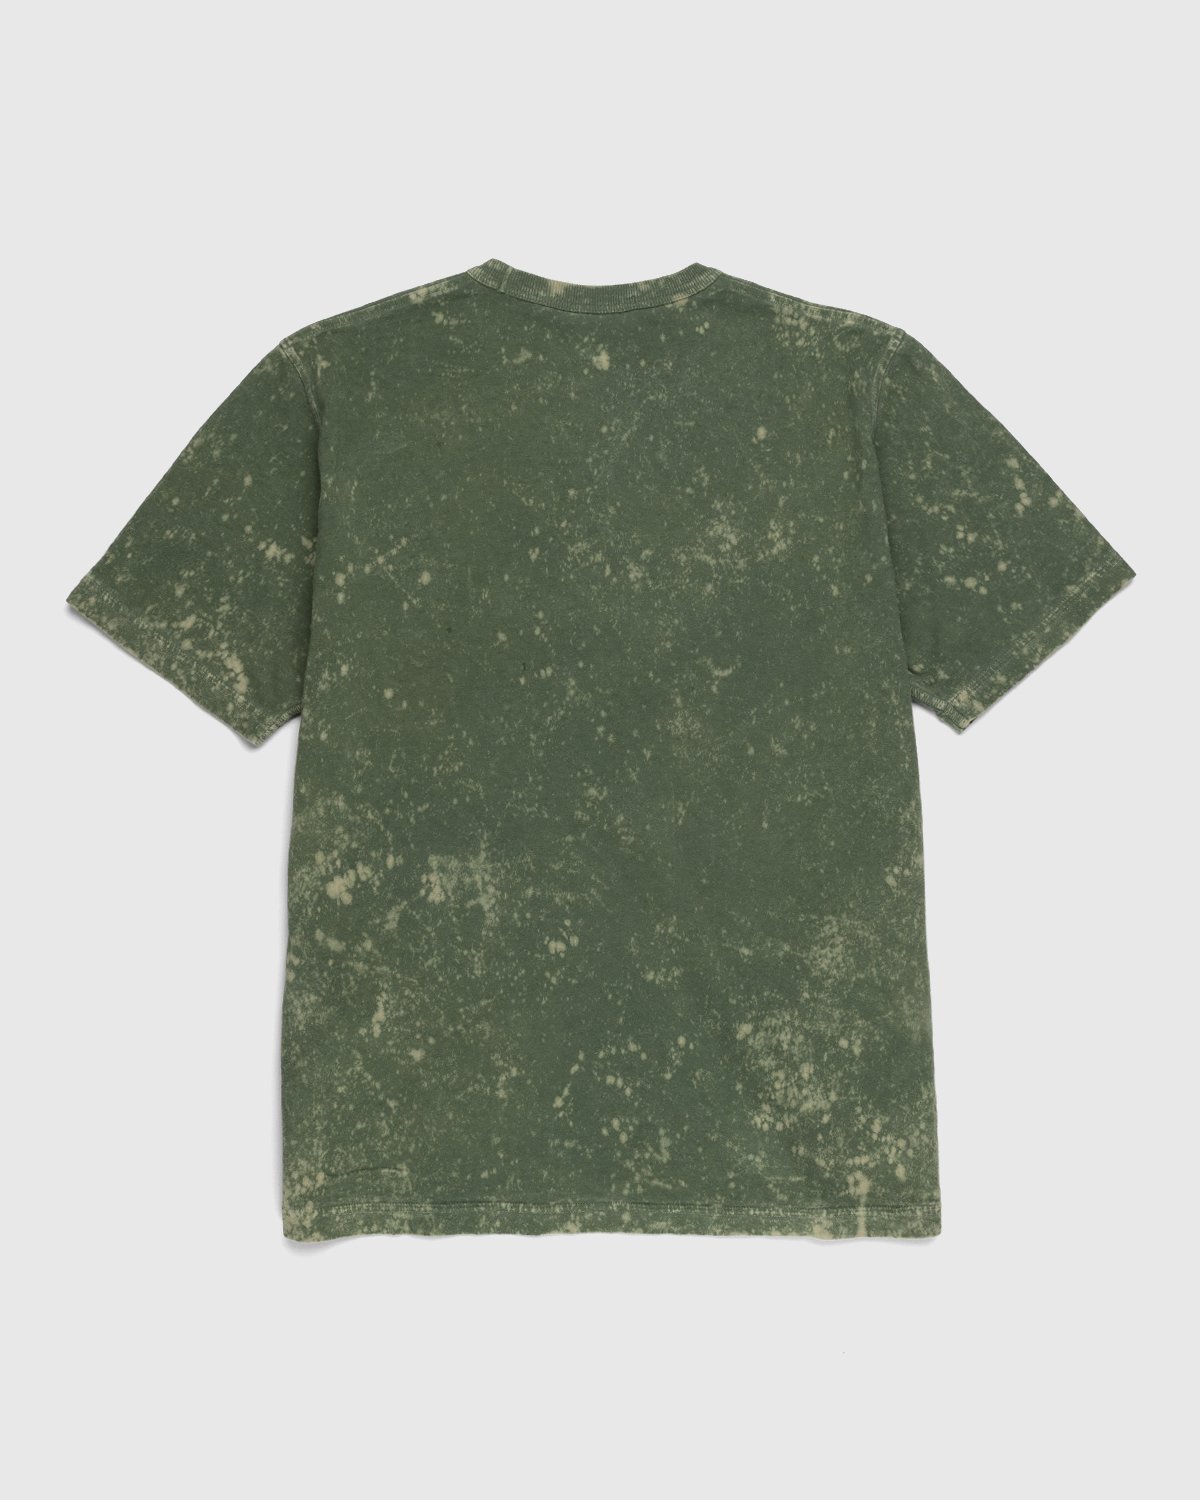 Stone Island - 20945 Off-Dye T-Shirt Olive - Clothing - Green - Image 2